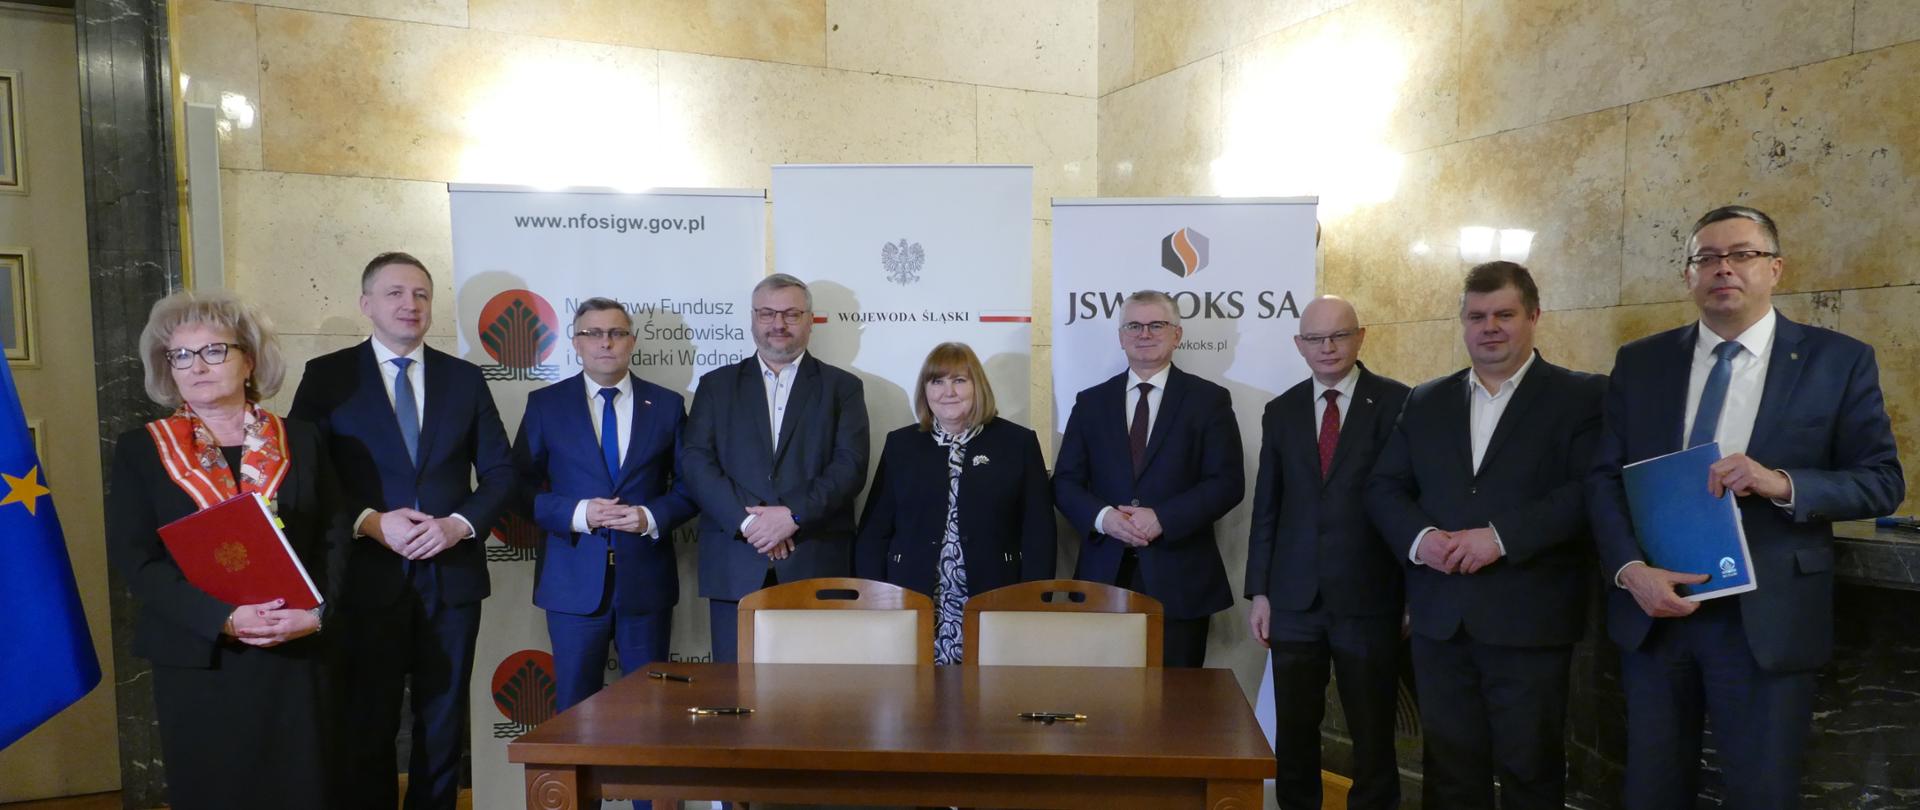 Uroczystość podpisania umowy o dofinansowanie przez NFOŚiGW projektu JSW KOKS S.A. - Modernizacja baterii koksowniczej nr 4 w Koksowni Przyjaźń.